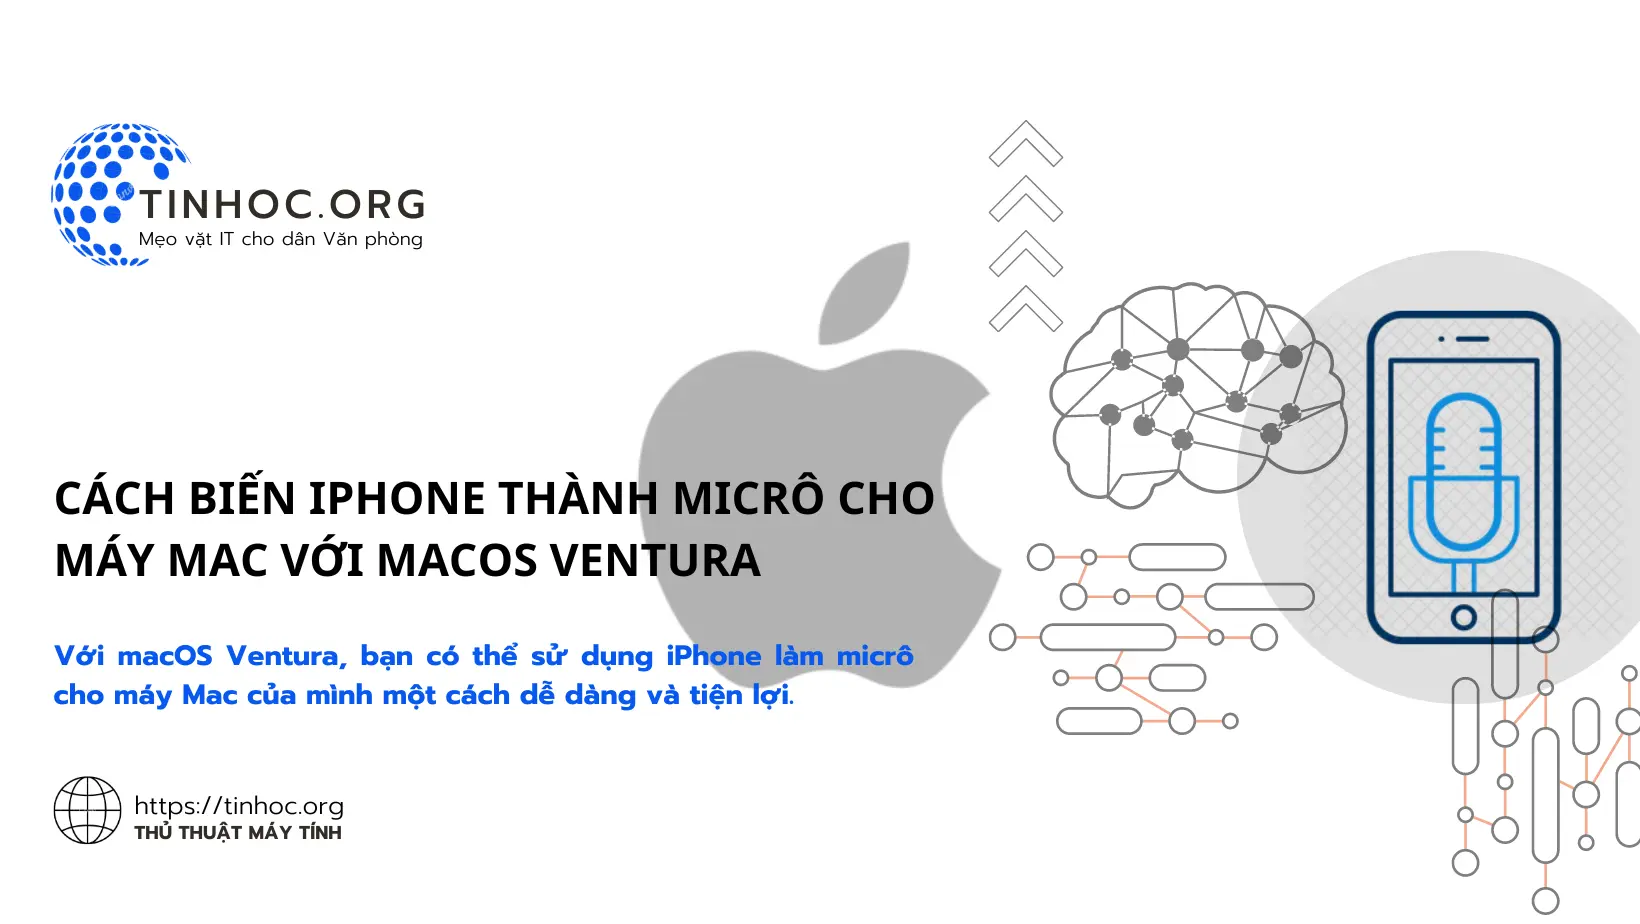 Cách biến iPhone thành micrô cho máy Mac với macOS Ventura